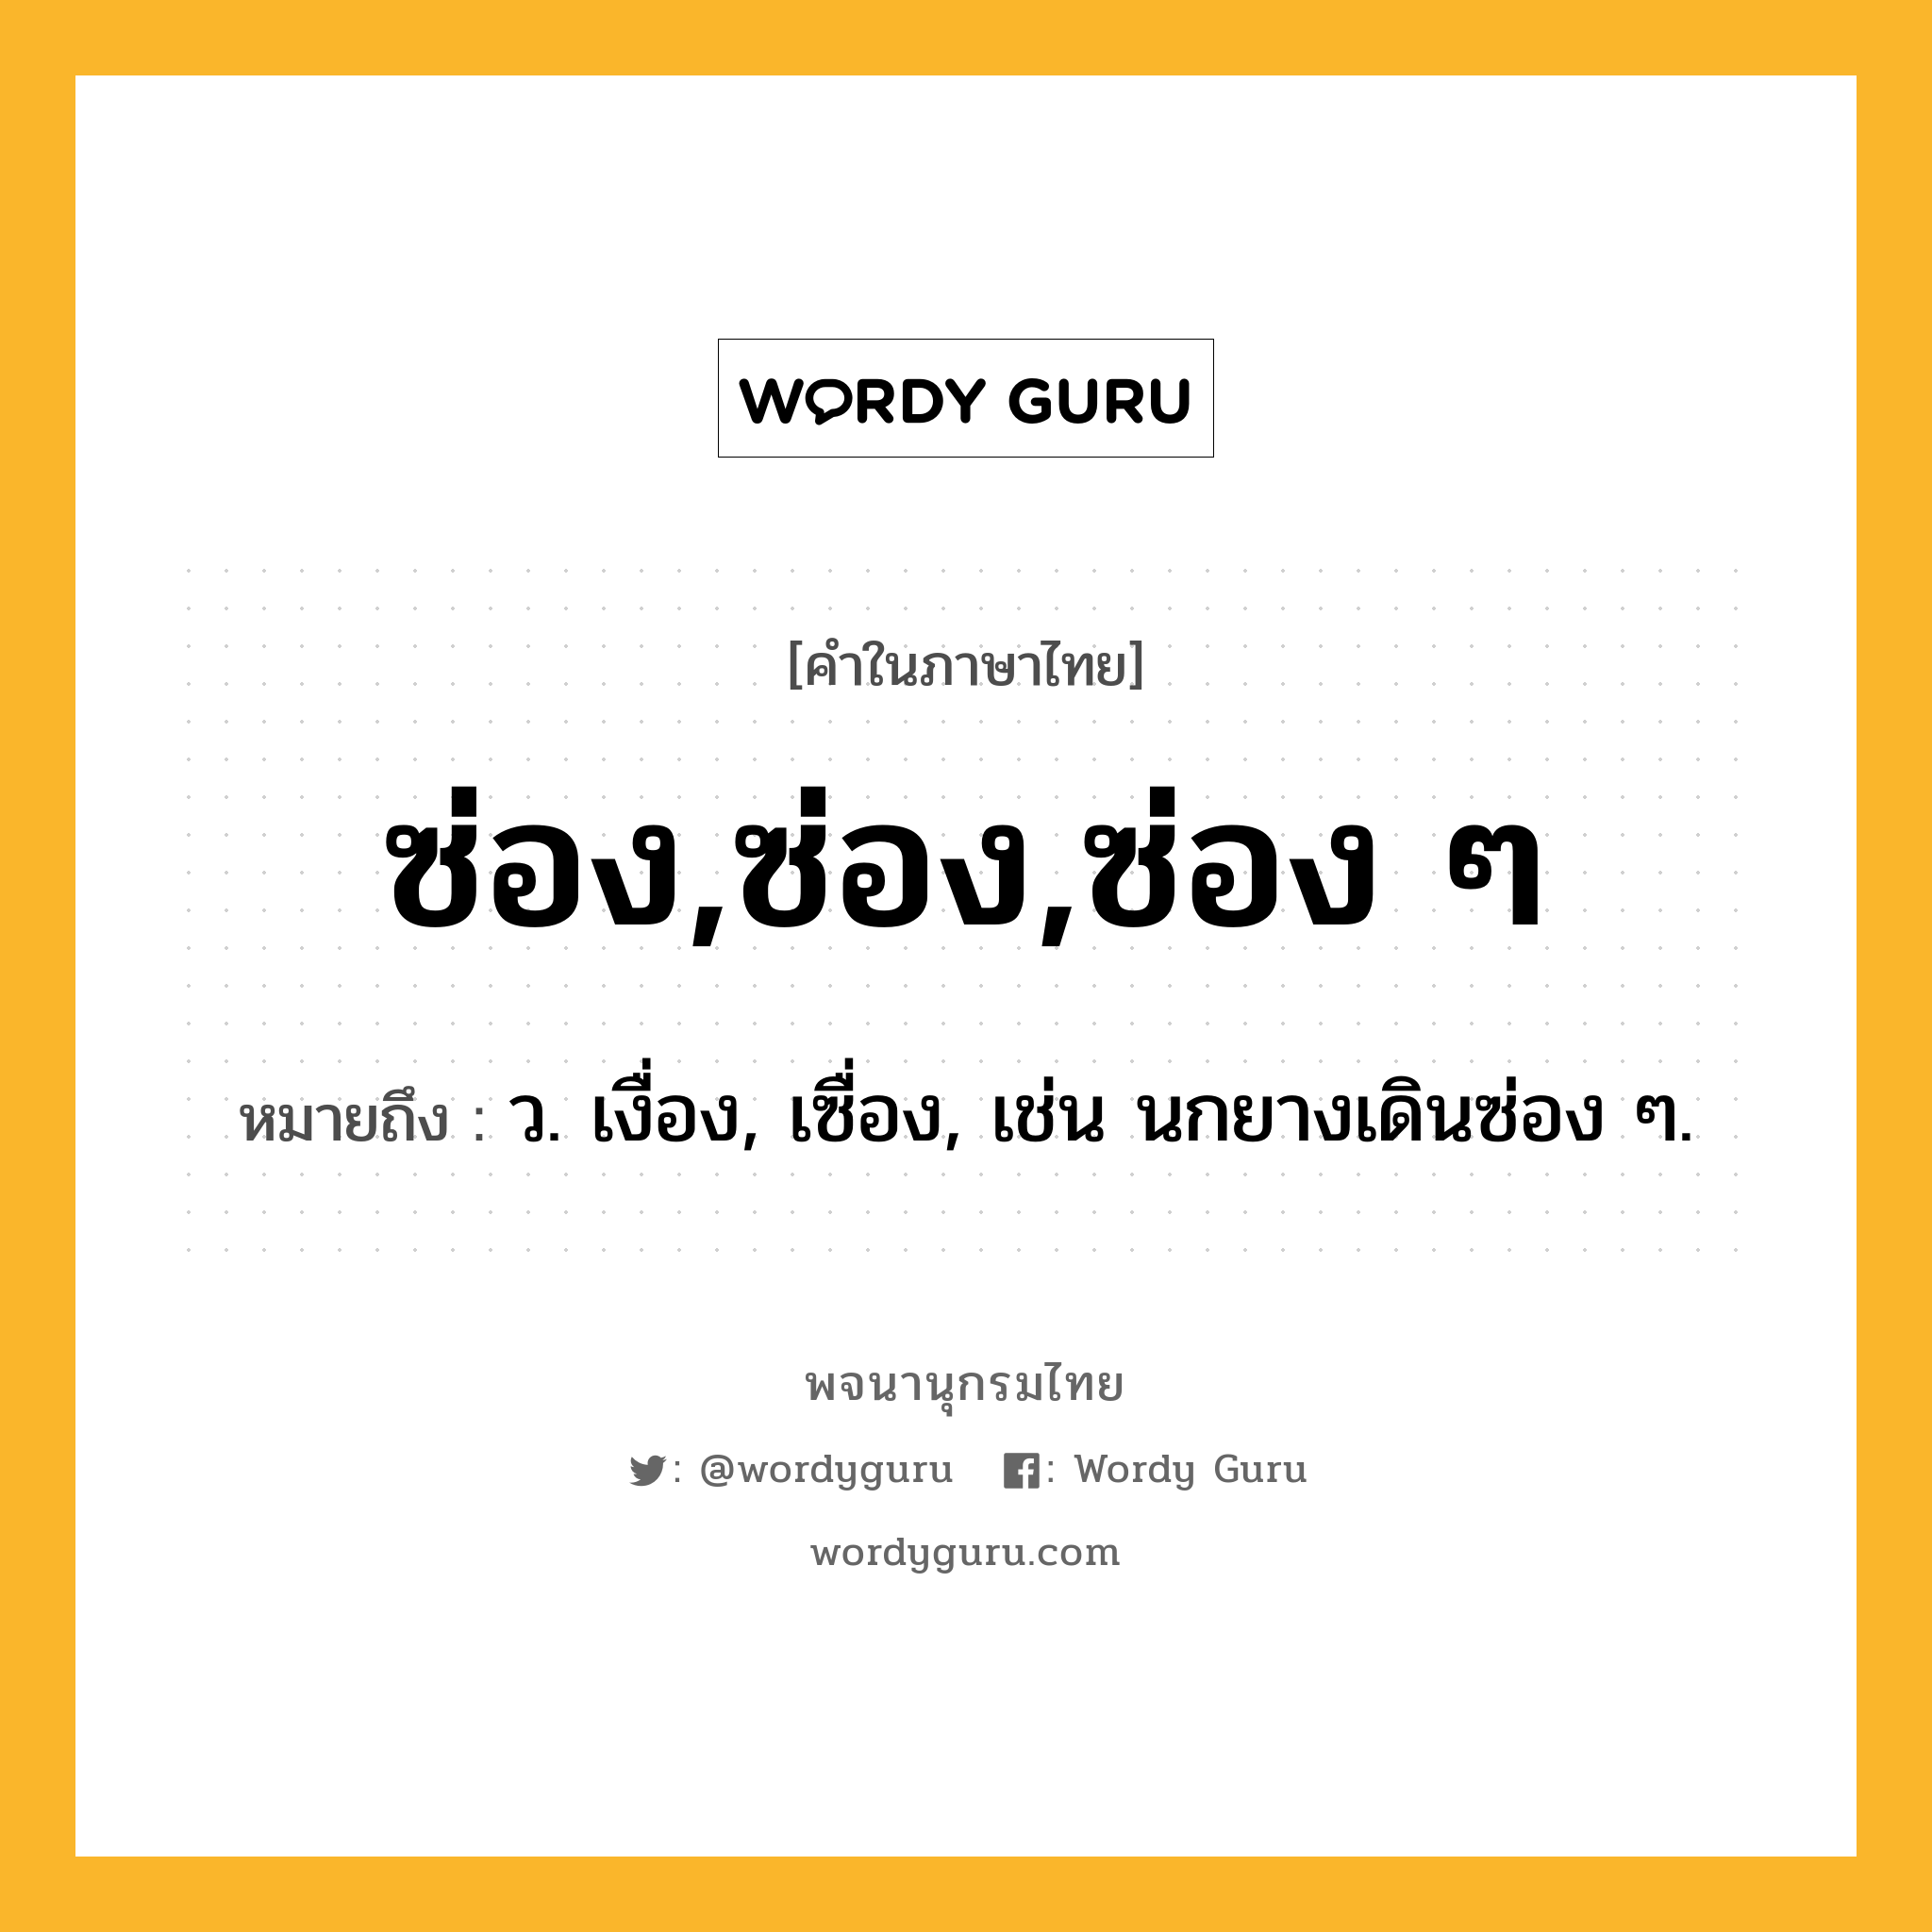 ซ่อง,ซ่อง,ซ่อง ๆ ความหมาย หมายถึงอะไร?, คำในภาษาไทย ซ่อง,ซ่อง,ซ่อง ๆ หมายถึง ว. เงื่อง, เซื่อง, เช่น นกยางเดินซ่อง ๆ.